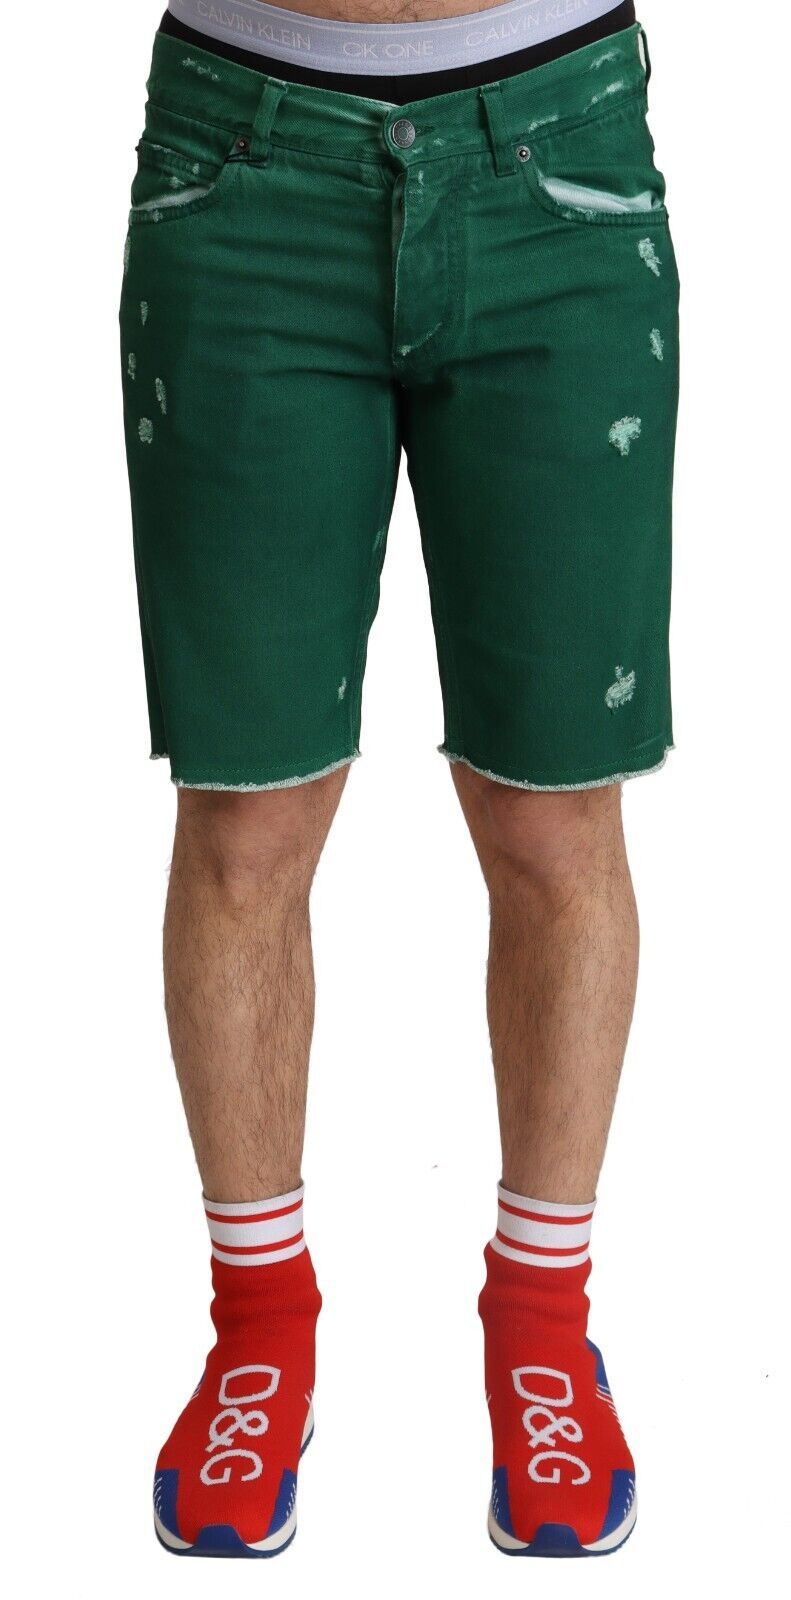 Dolce & Gabbana Chic Green Denim Bermuda Men's Shorts